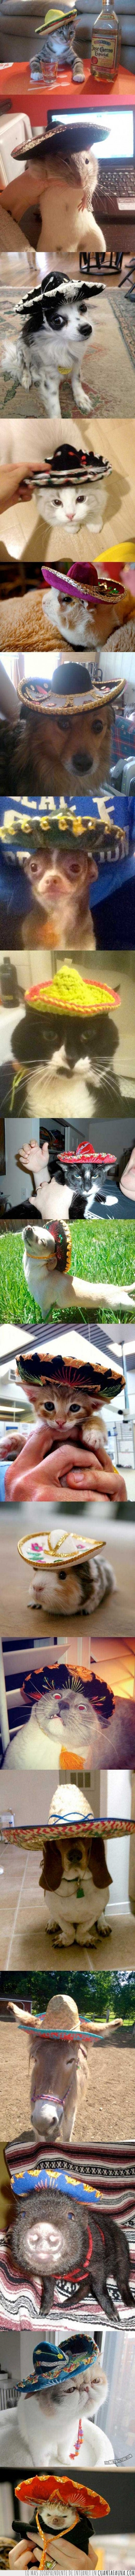 mexicano,sombrero,chihuahua,perro,gato,erizo,gorro